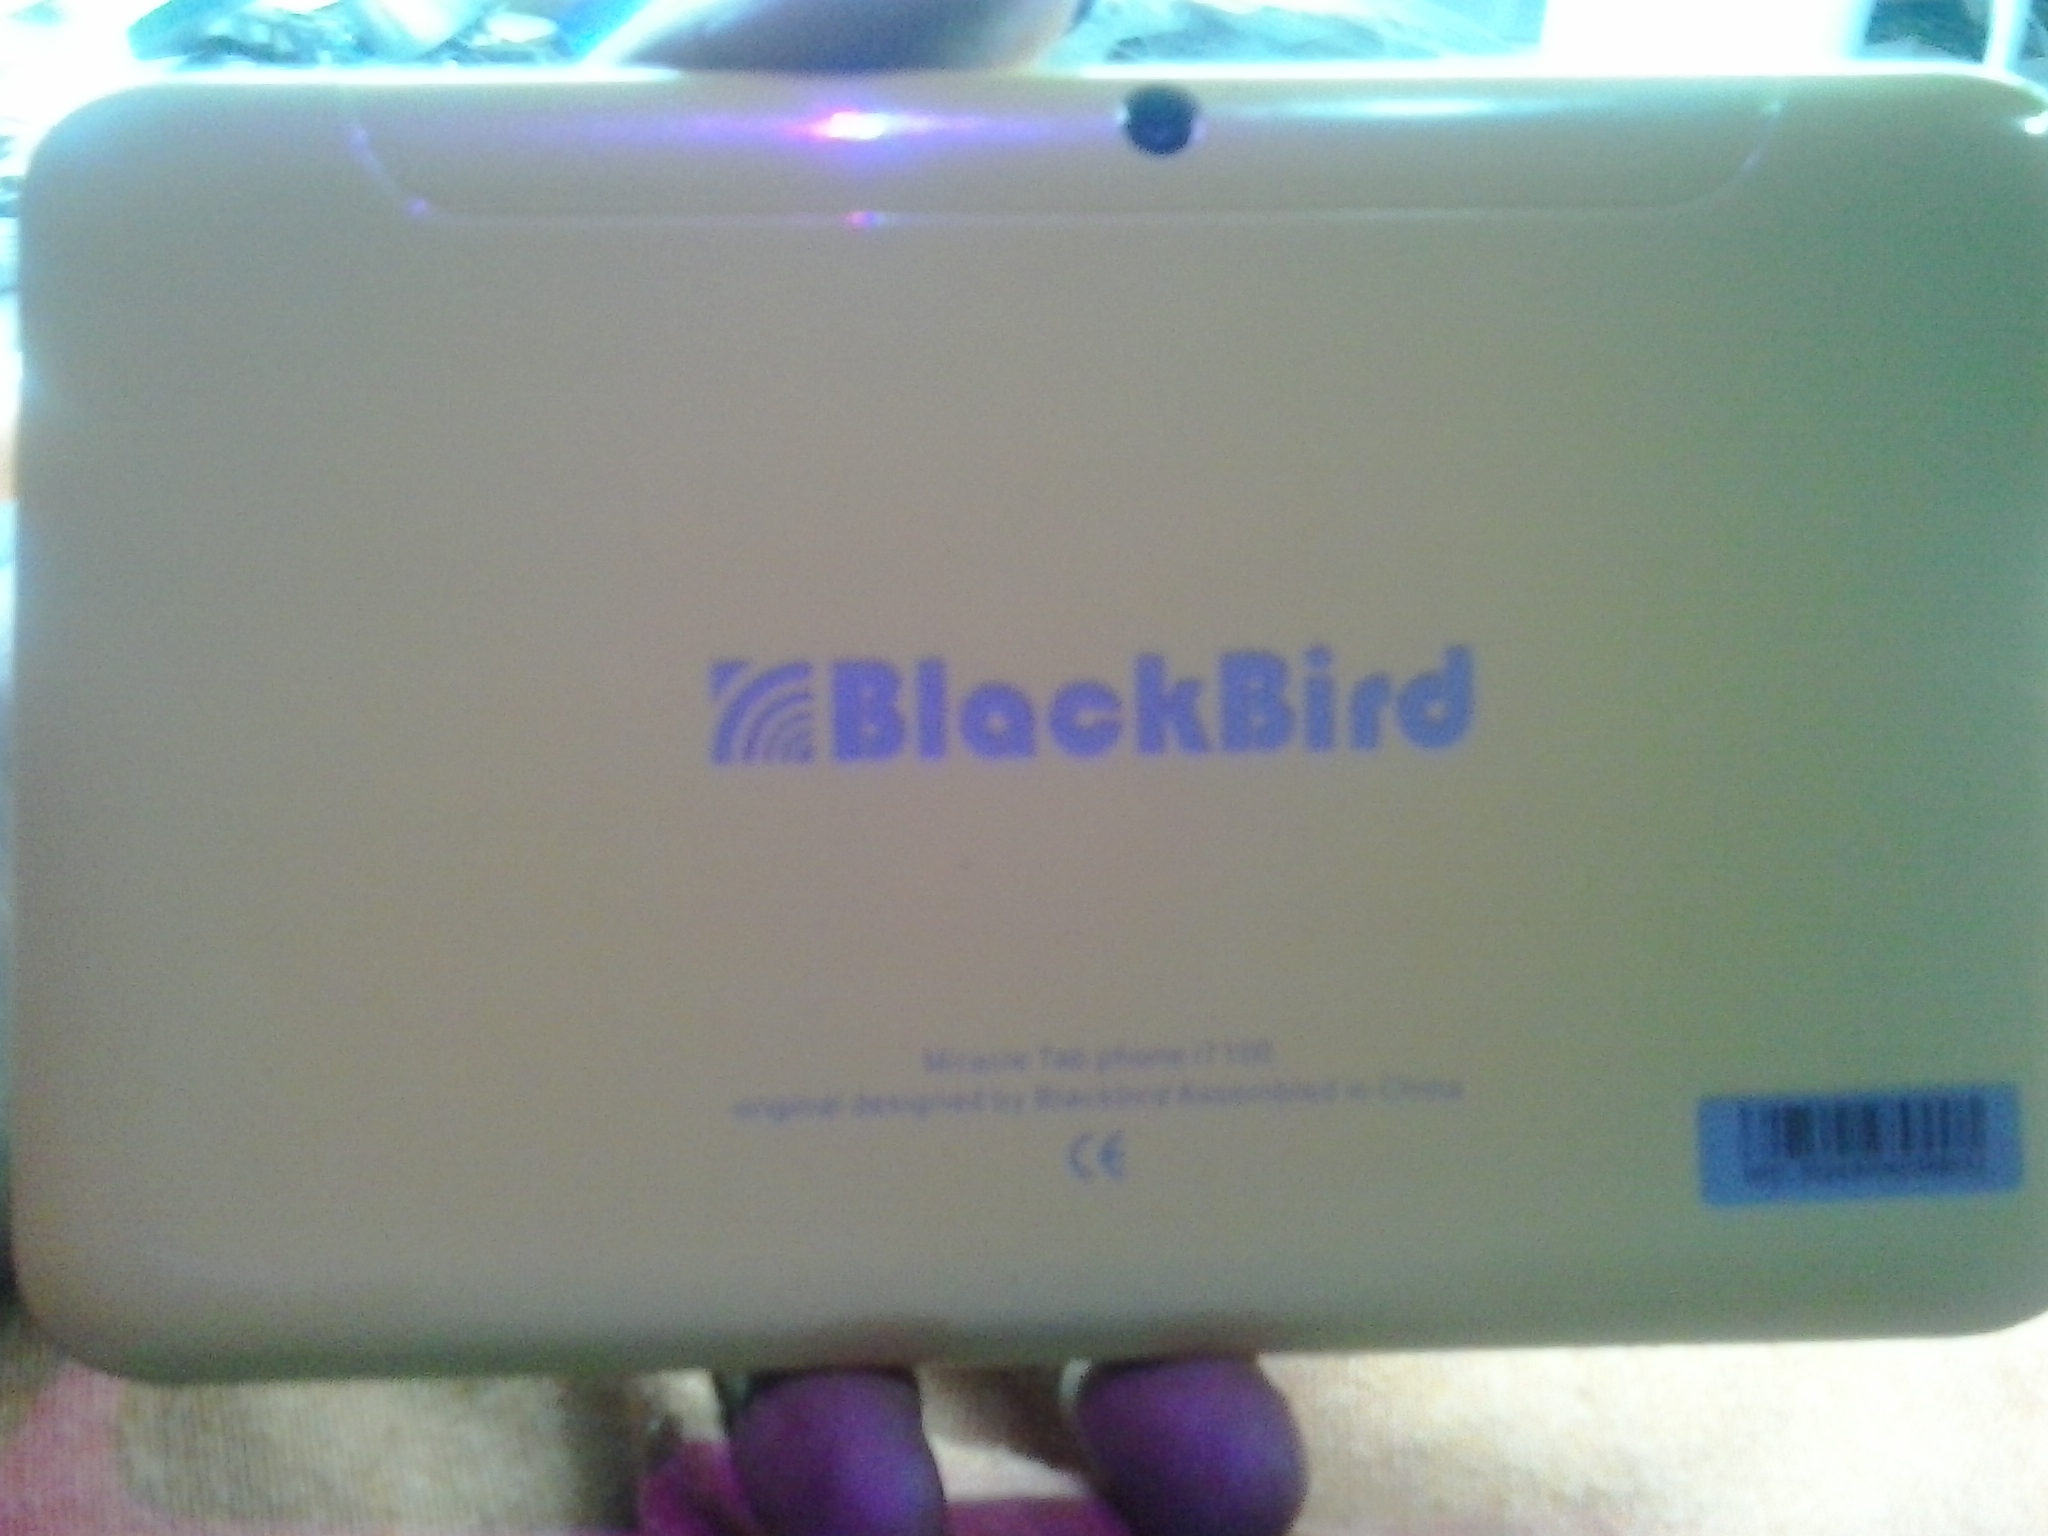  BlackBird  i7100